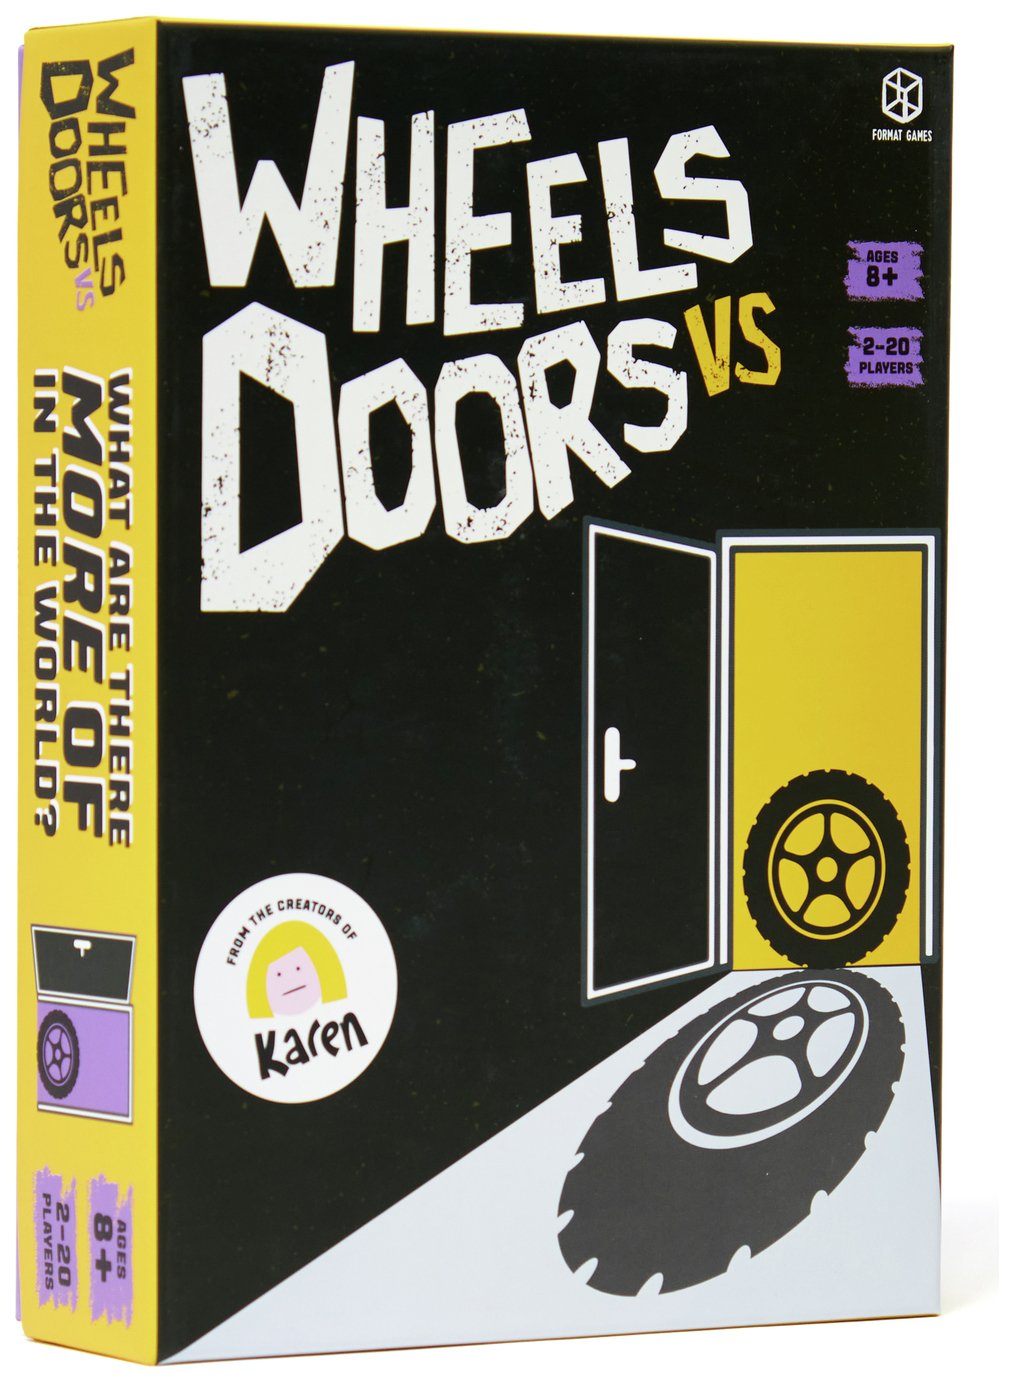 Wheels VS Doors Board Game